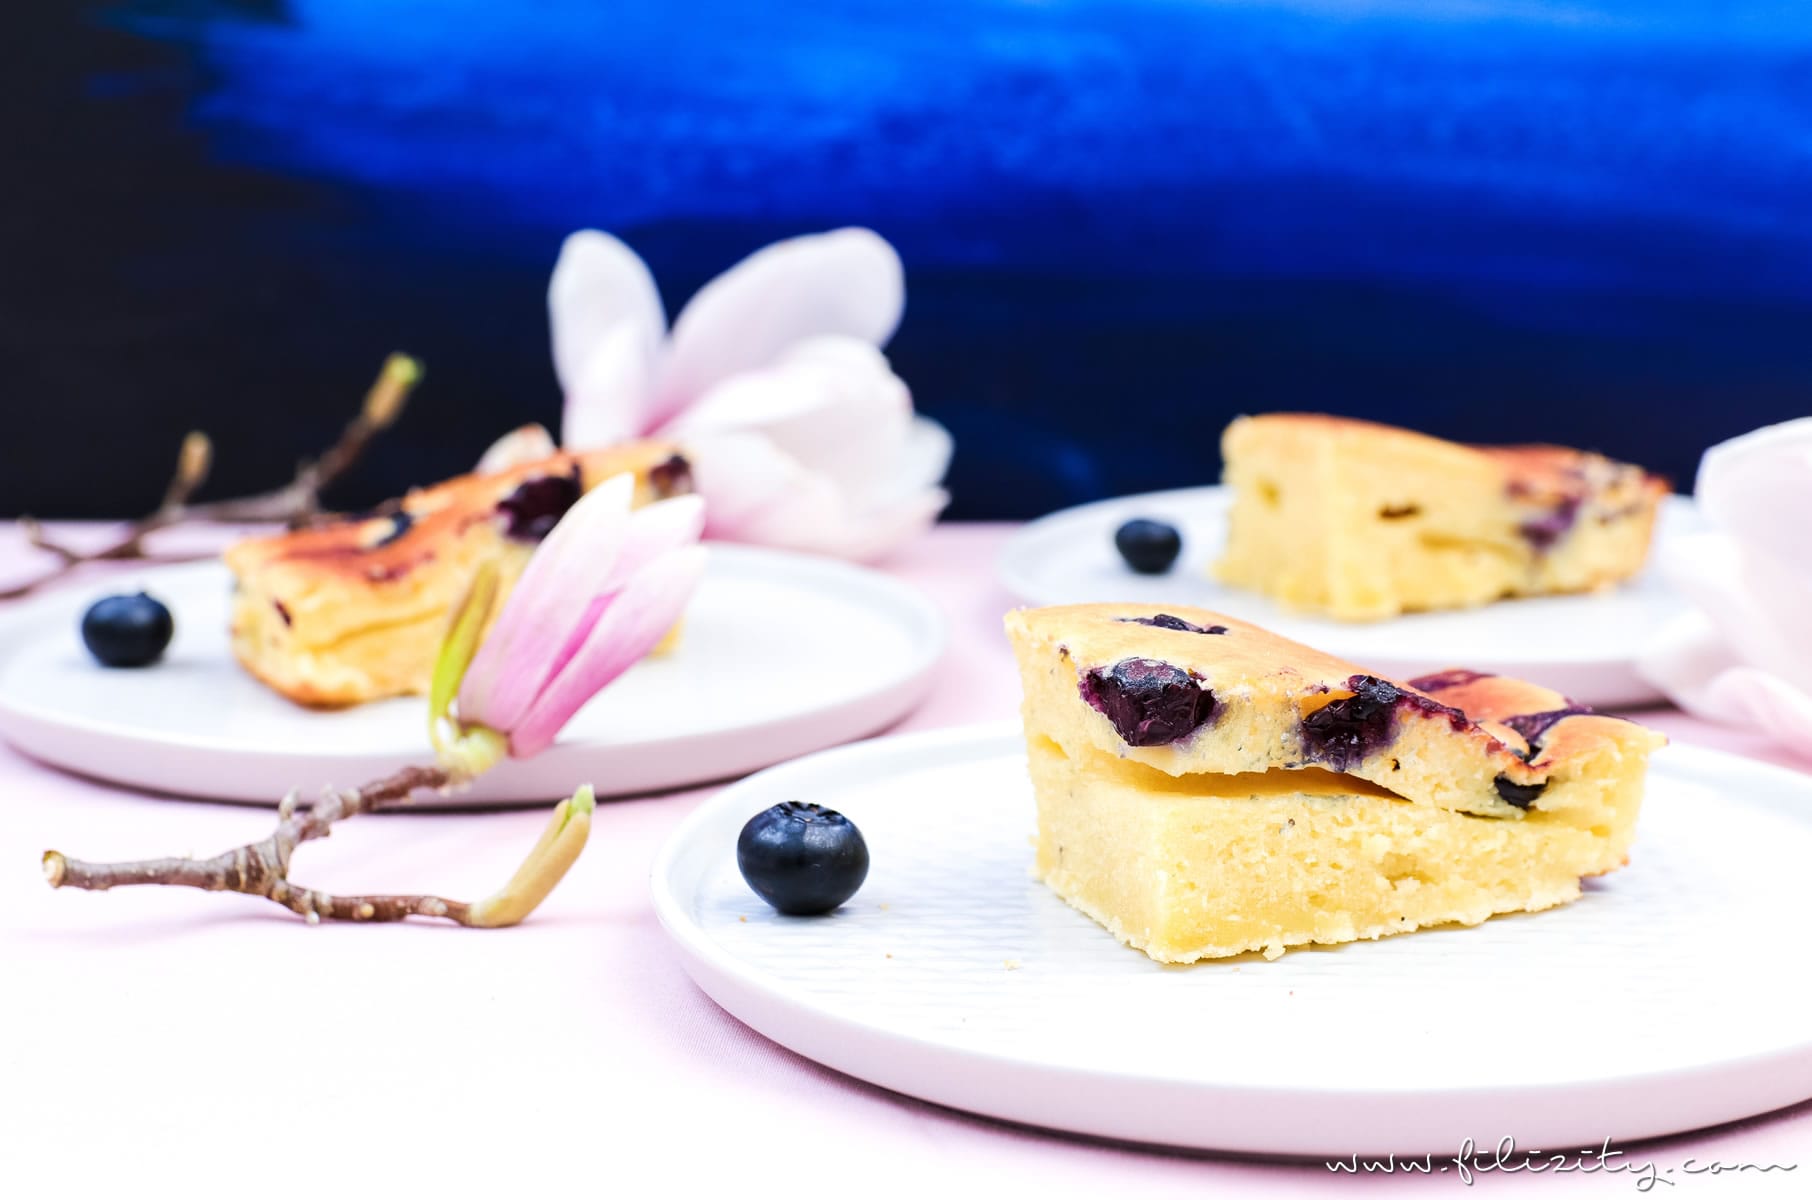 Rezept für Ofen-Pfannkuchen mit Blaubeeren - Zum Frühstück oder als Dessert | Filizity.com | Food-Blog aus dem Rheinland #pancakes #dessert #sommer